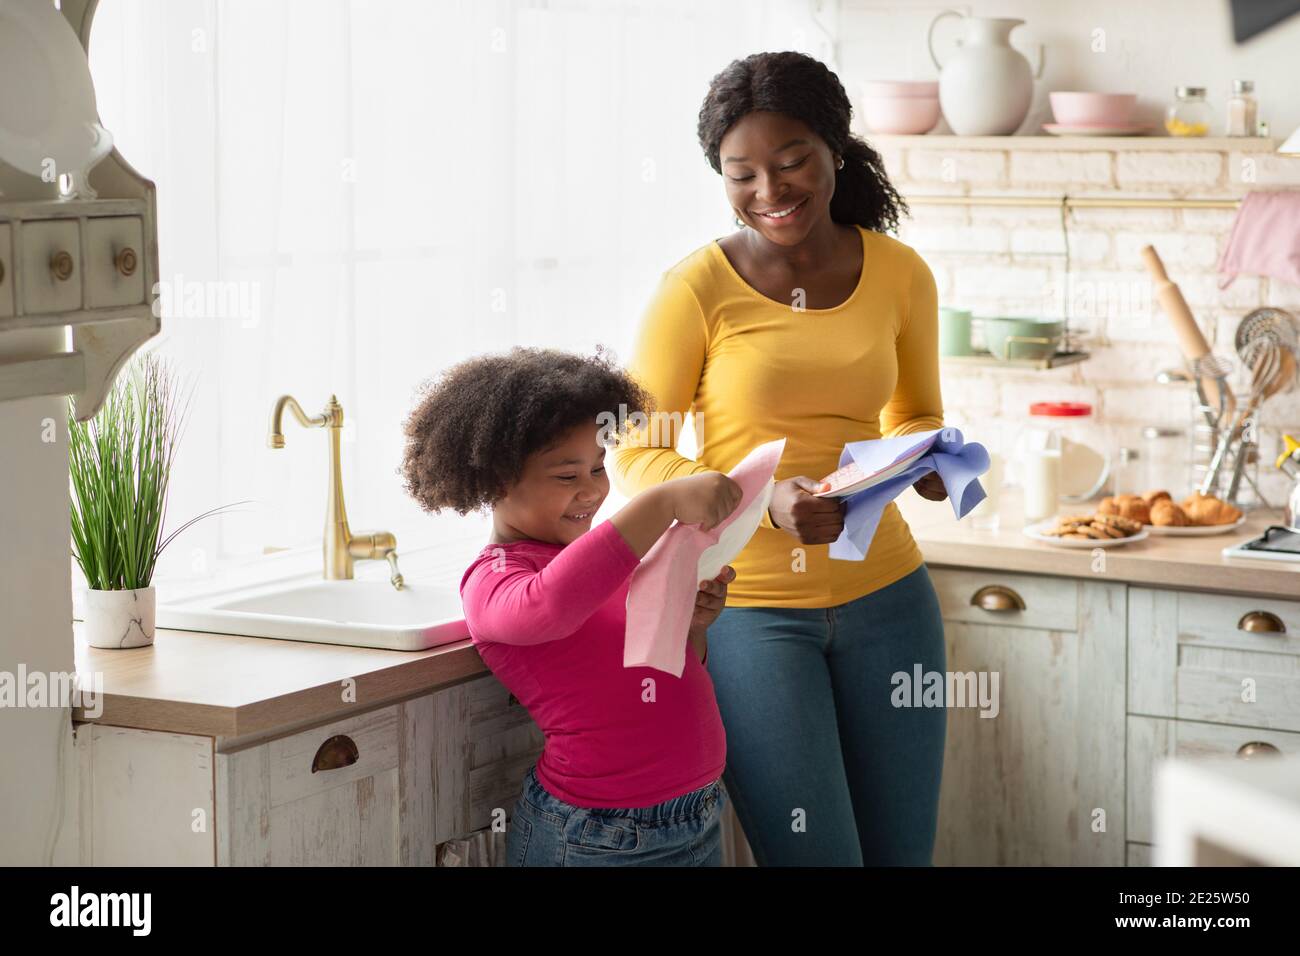 Mignon Afro-américaine fille aidant la mère avec la maison, Wiping plats dans la cuisine Banque D'Images